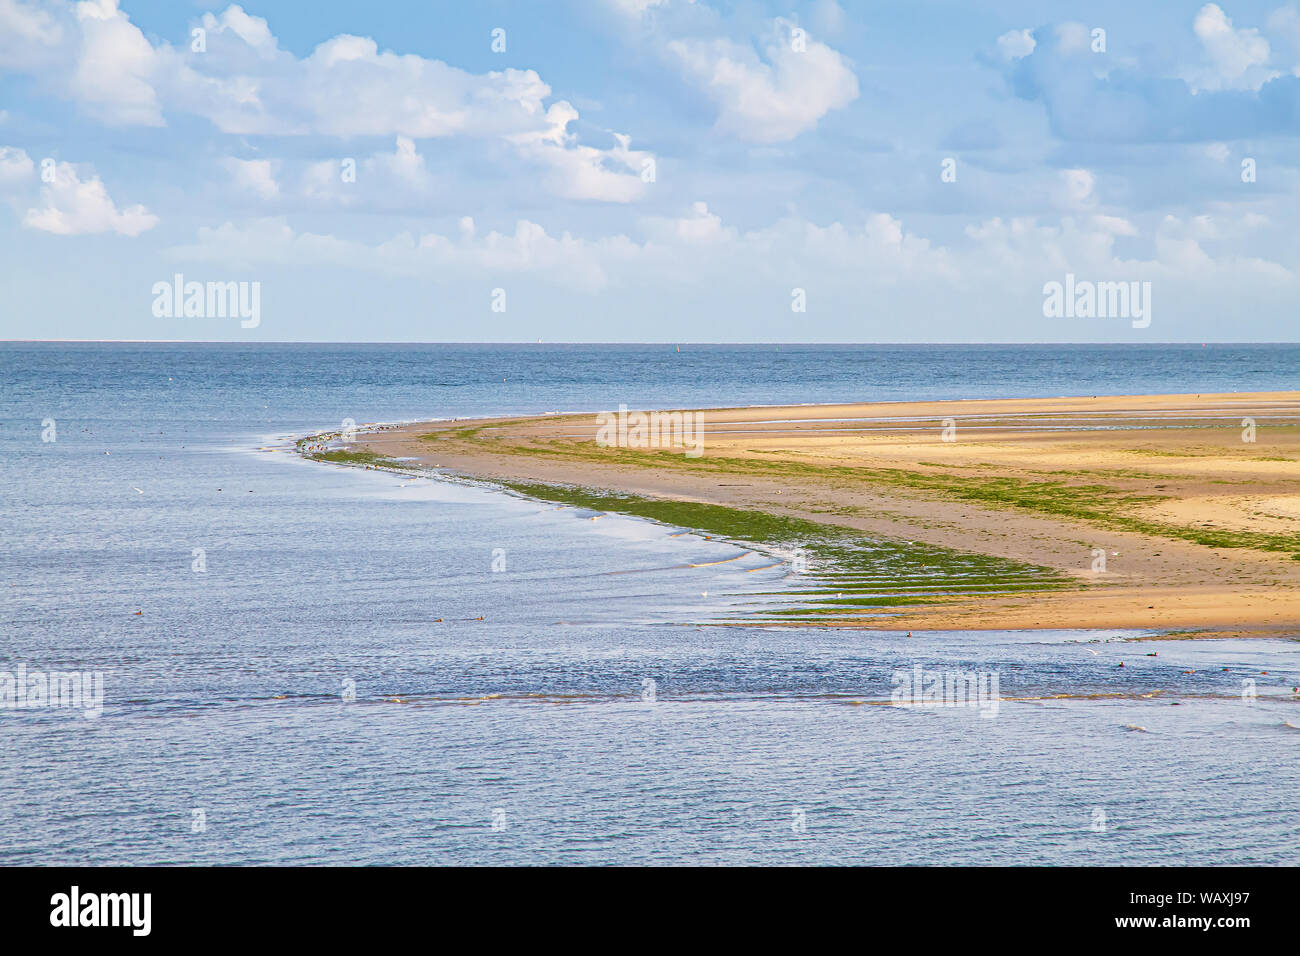 Coast of Wittduen, Island Amrum, Germany Stock Photo